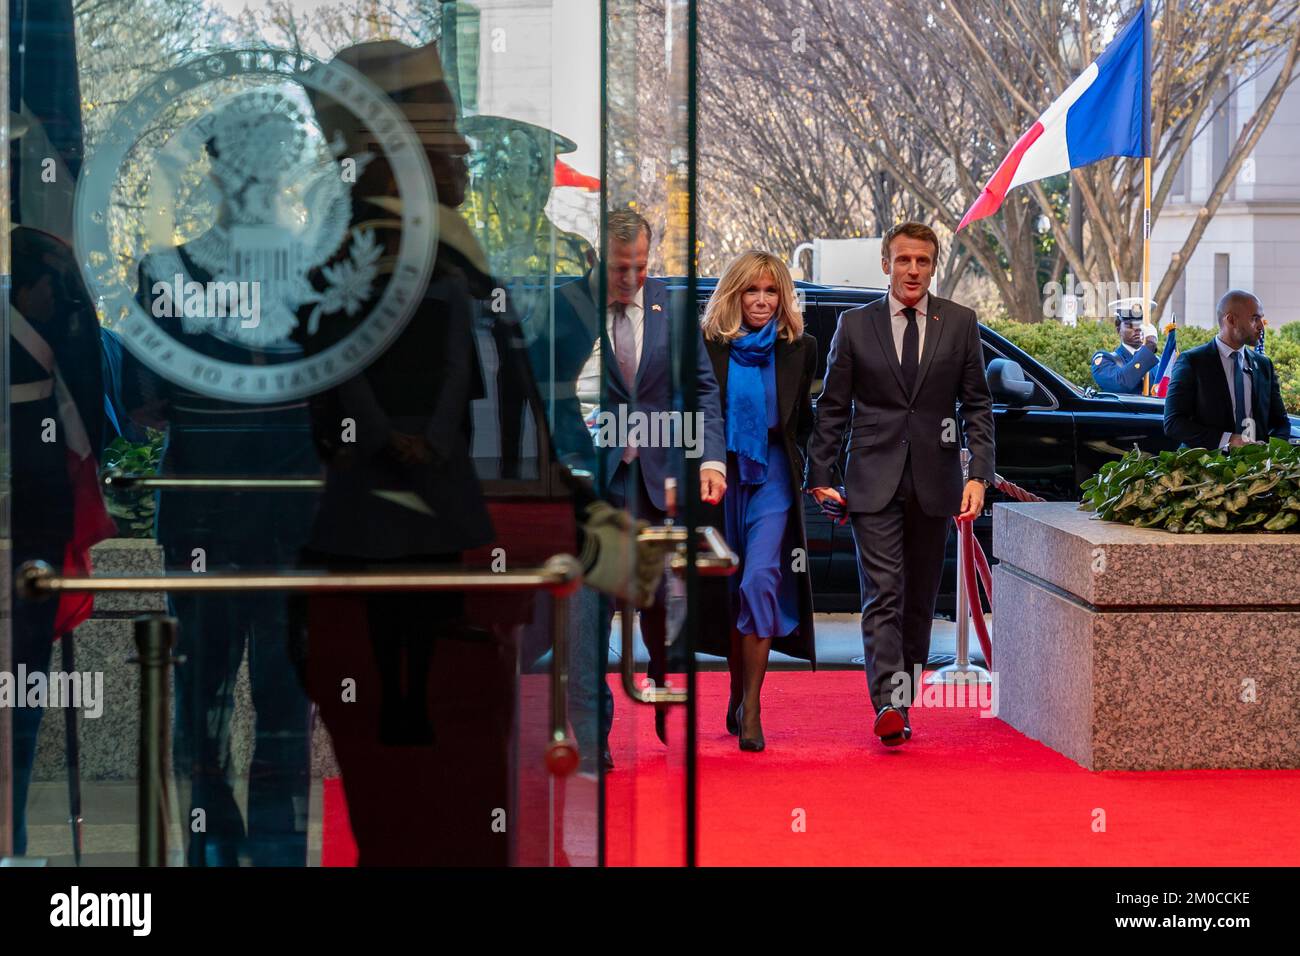 Le président français Macron et la première dame française Macron arrivent pour le déjeuner d'État le président français Emmanuel Macron et la première dame française Brigitte Macron arrivent pour assister au déjeuner d'État aux États-Unis Département d'État à Washington, D.C., on 1 décembre 2022. Banque D'Images